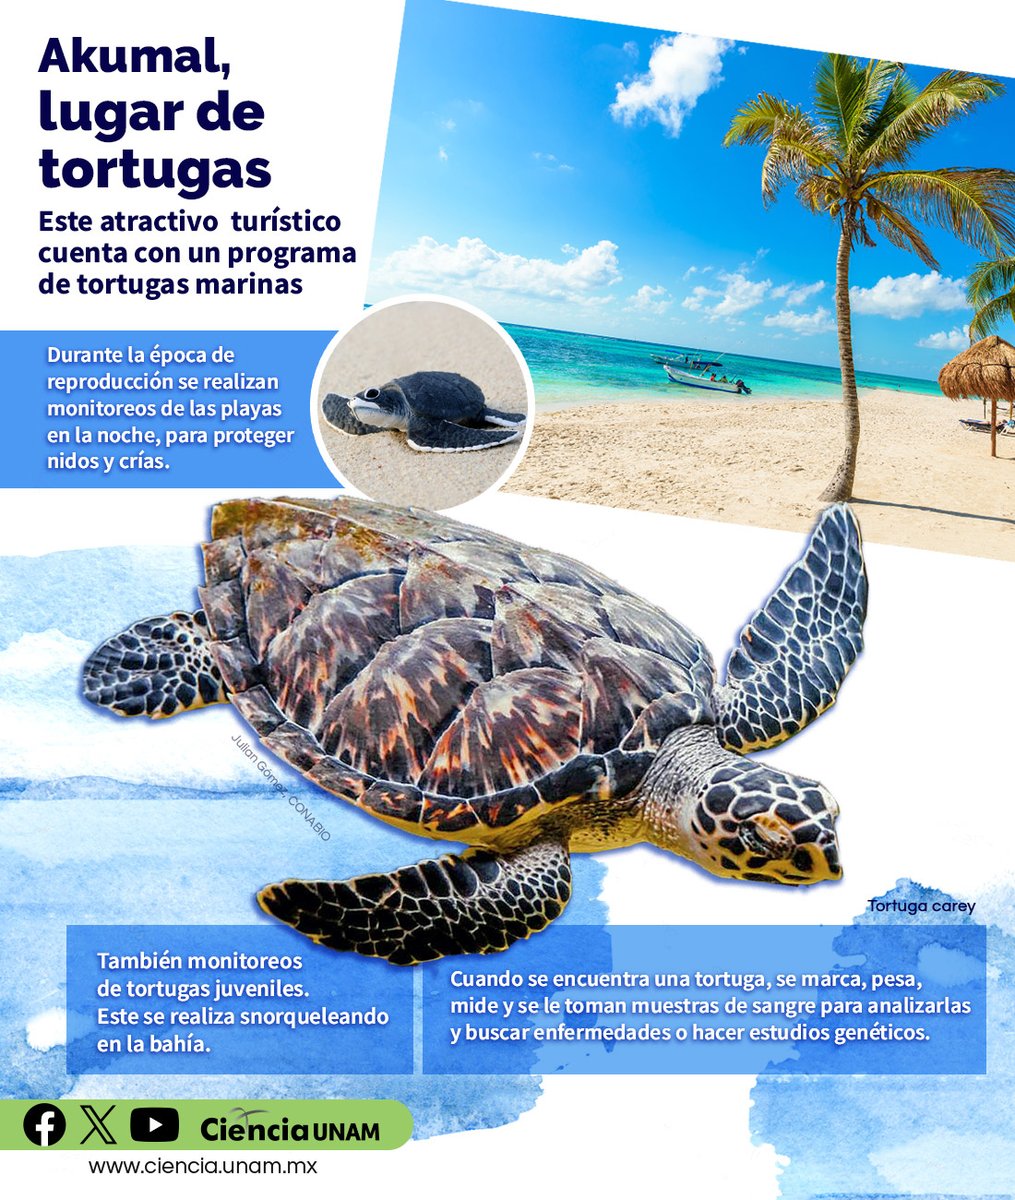 #AmbienteyNaturaleza | En Akumal, Quintana Roo puedes observar a tres de las siete especies de #tortugas marinas que existen en el mundo. Te contamos de este lugar regulado que prevé la conservación de las especies: lc.cx/Zmimr8